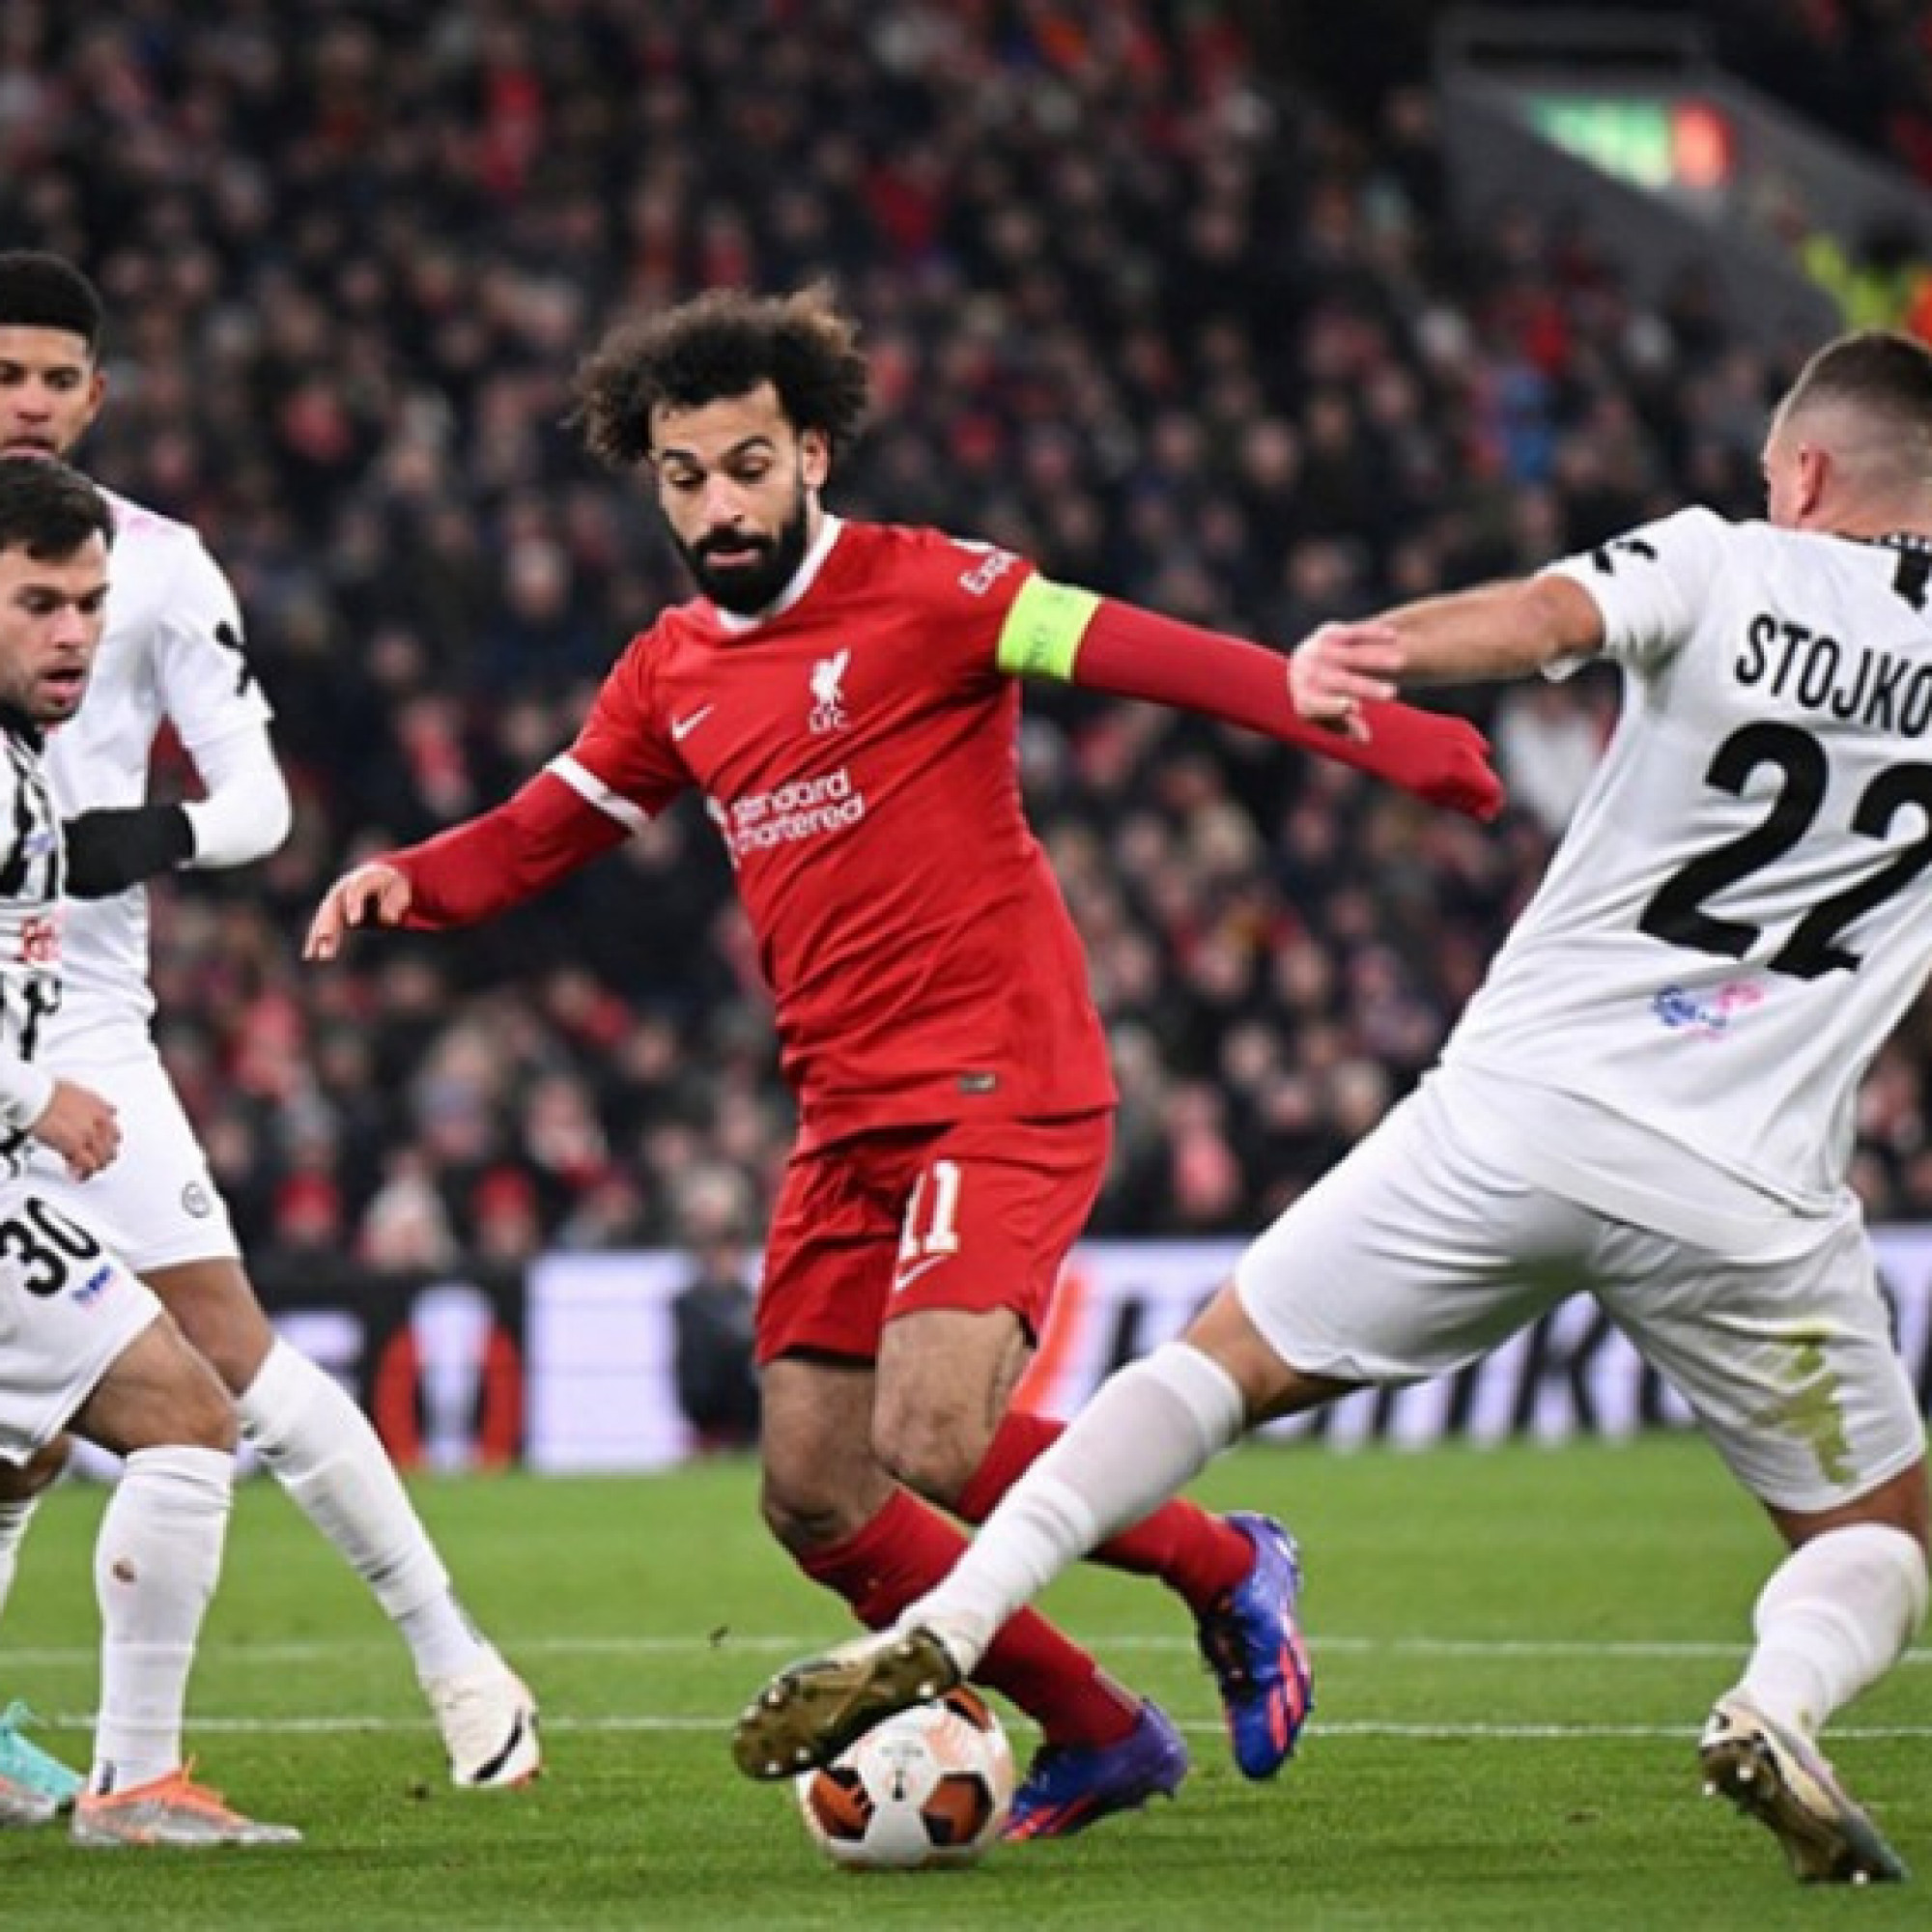  - Kết quả bóng đá Liverpool - LASK: Salah tỏa sáng, mãn nhãn 4 bàn (Europa League)